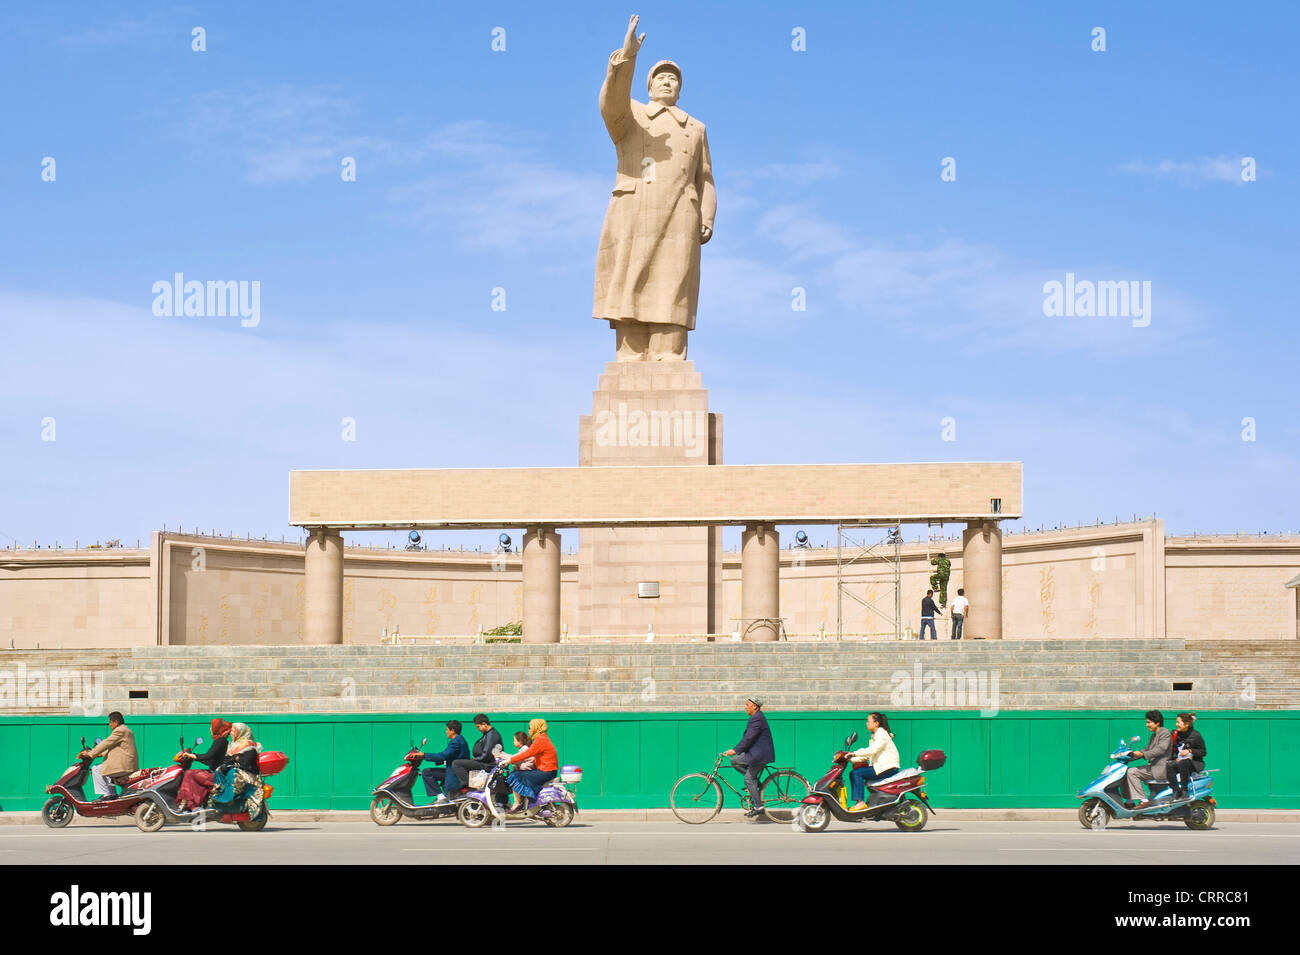 Mit Bewegungsunschärfe.  Fahrzeuge und Personen reisen Sie vorbei an der Statue von Mao Zedong gegenüber dem Stadtplatz in Kashgar. Stockfoto